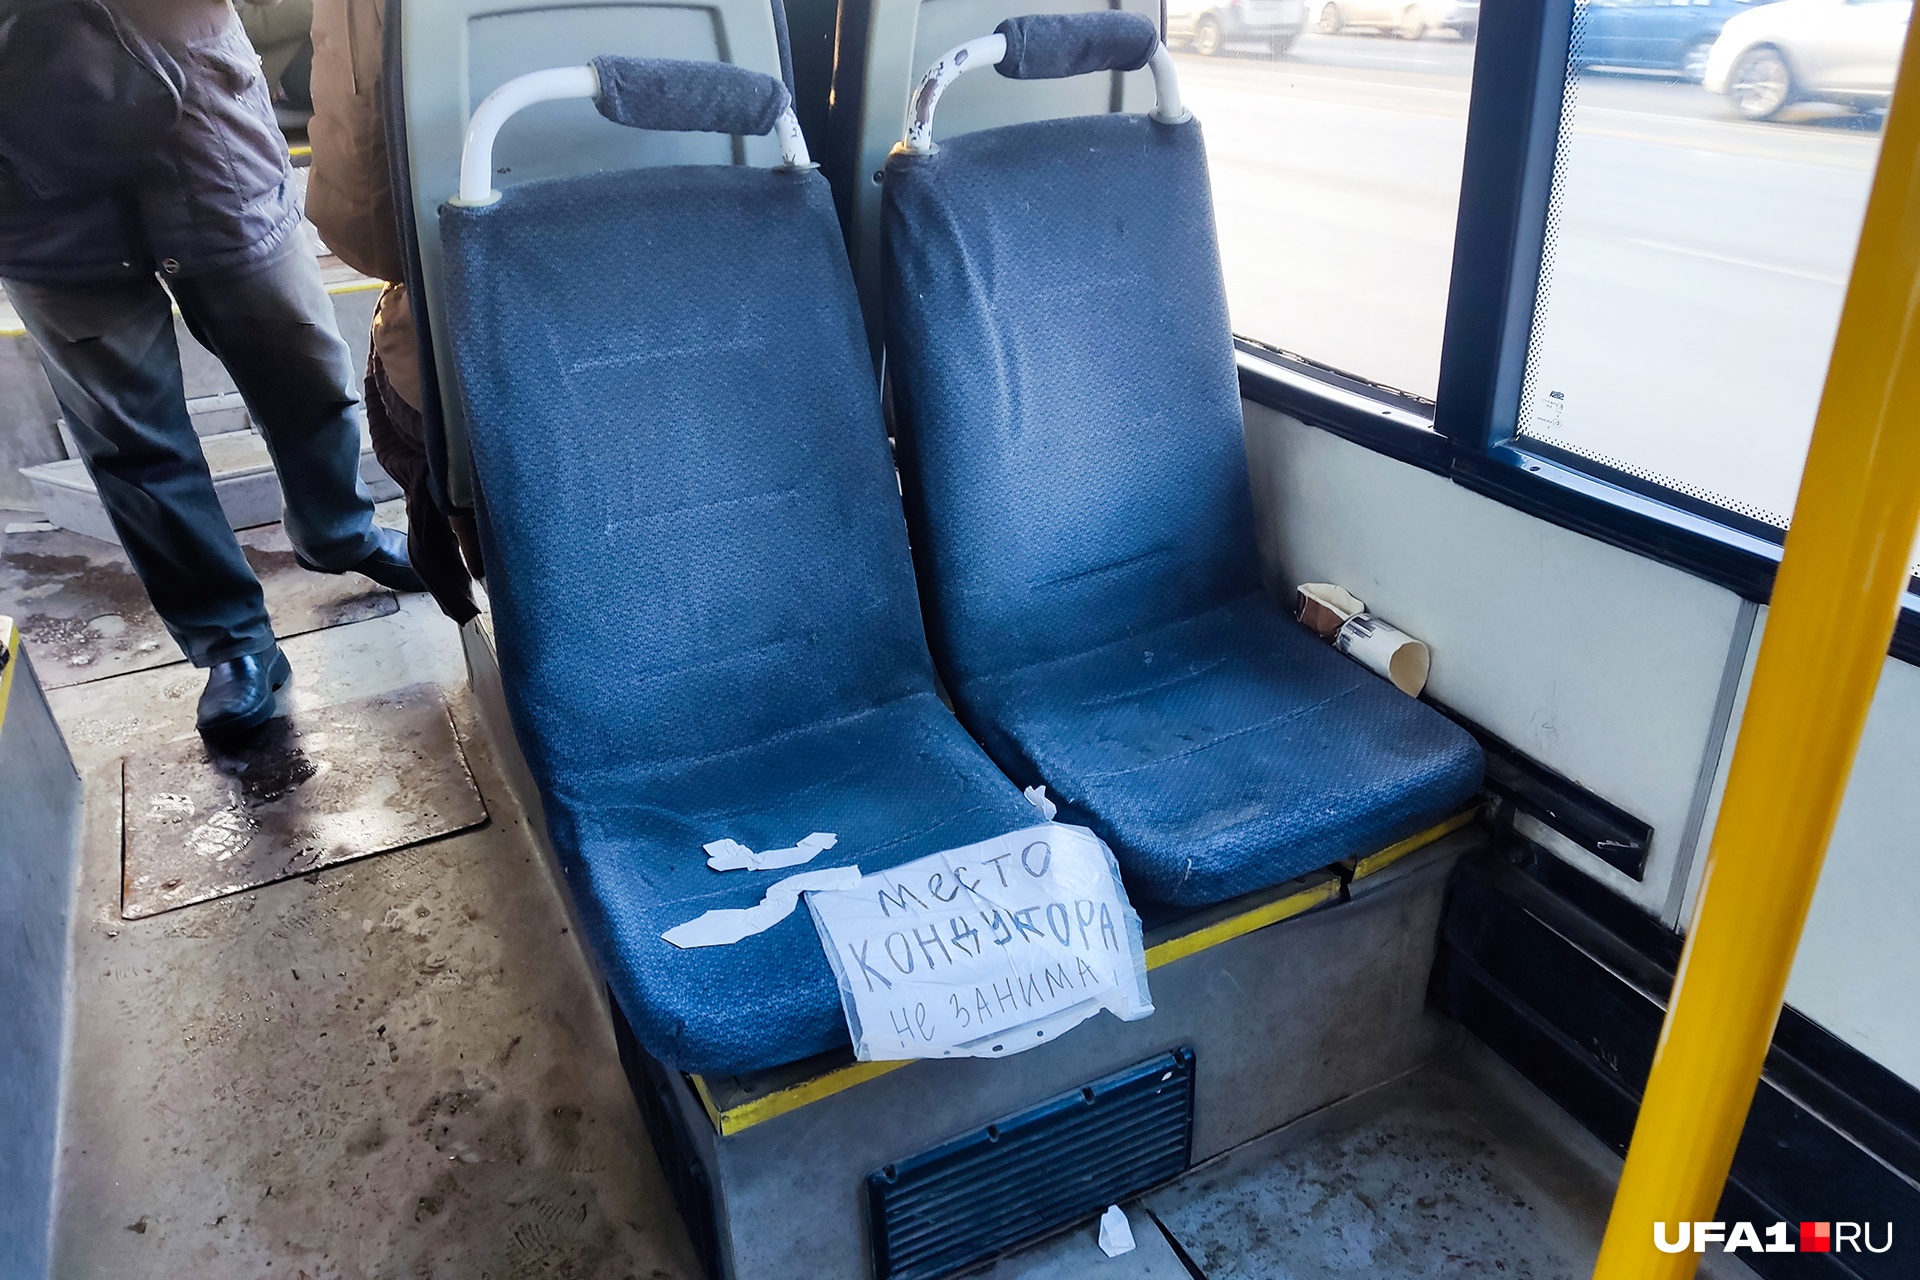 В автобусах госперевозчика всё по классике жанра — бумажка с просьбой не занимать место кондуктора, засаленные кресла и облезшие поручни